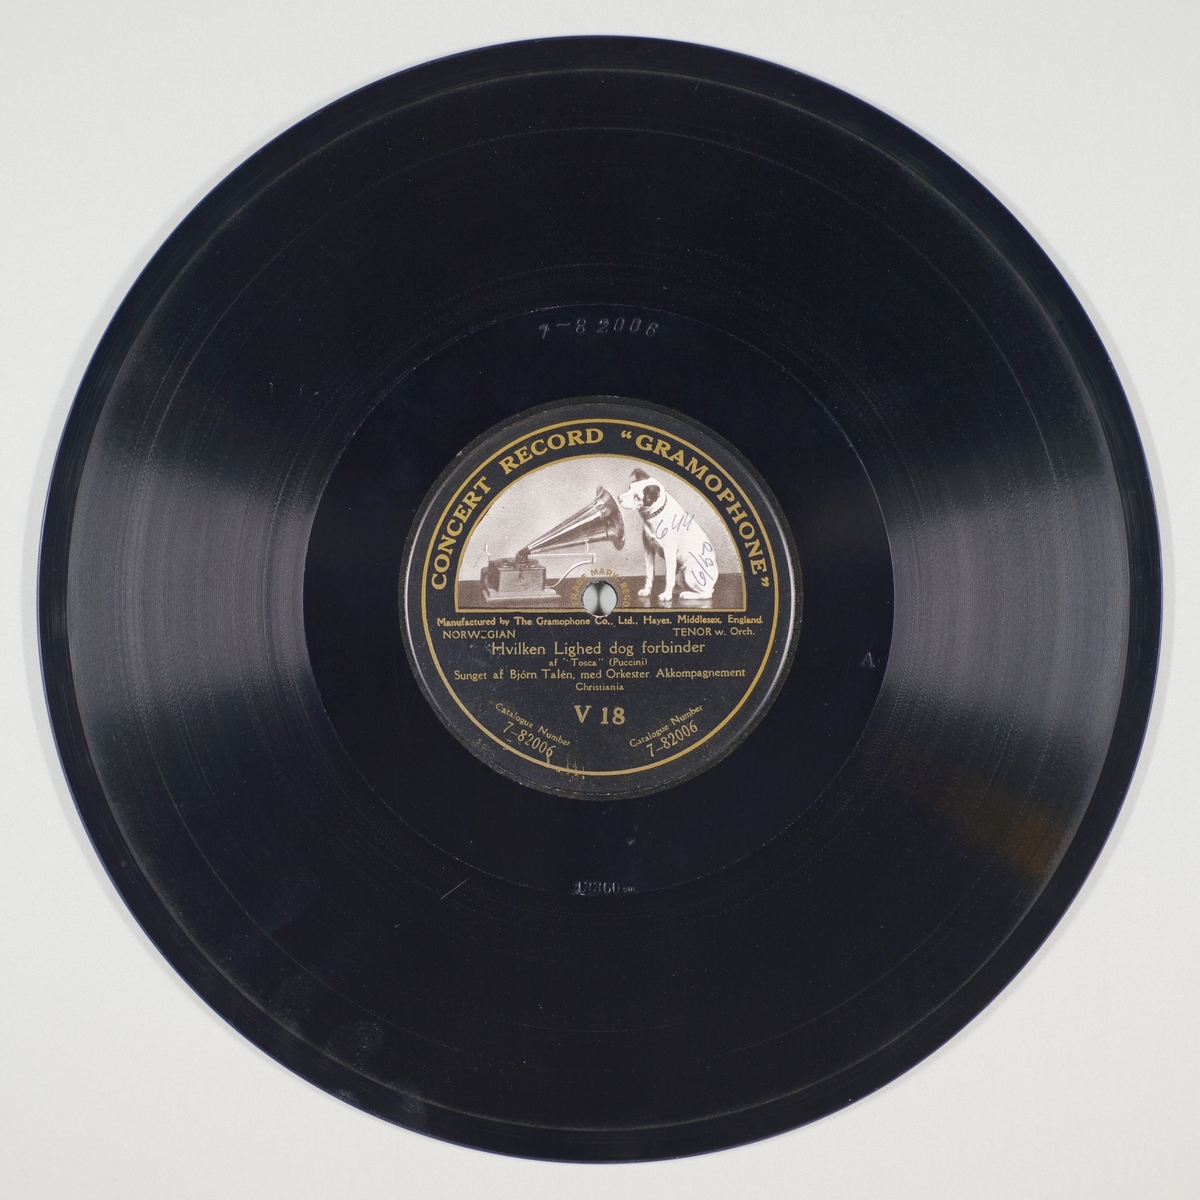 FTT.54255.01:
Svart grammofonplate laget av bakelitt og skjellak. Etiketten er svart med skrift i gull, for tekst se "Påført tekst/merker". På etiketten er det en hund som sitter og lytter til en grammofon. Trykket er i svart, grått og hvitt. På A-siden er det en sekundær påskrift. 

FTT.54255.02:
Plateomslaget til platen er laget av lysegrønt papir som er limt. Teksten er i mørk grønt, for tekst se "Påført tekst/merker". Omslaget er likt på begge sider.